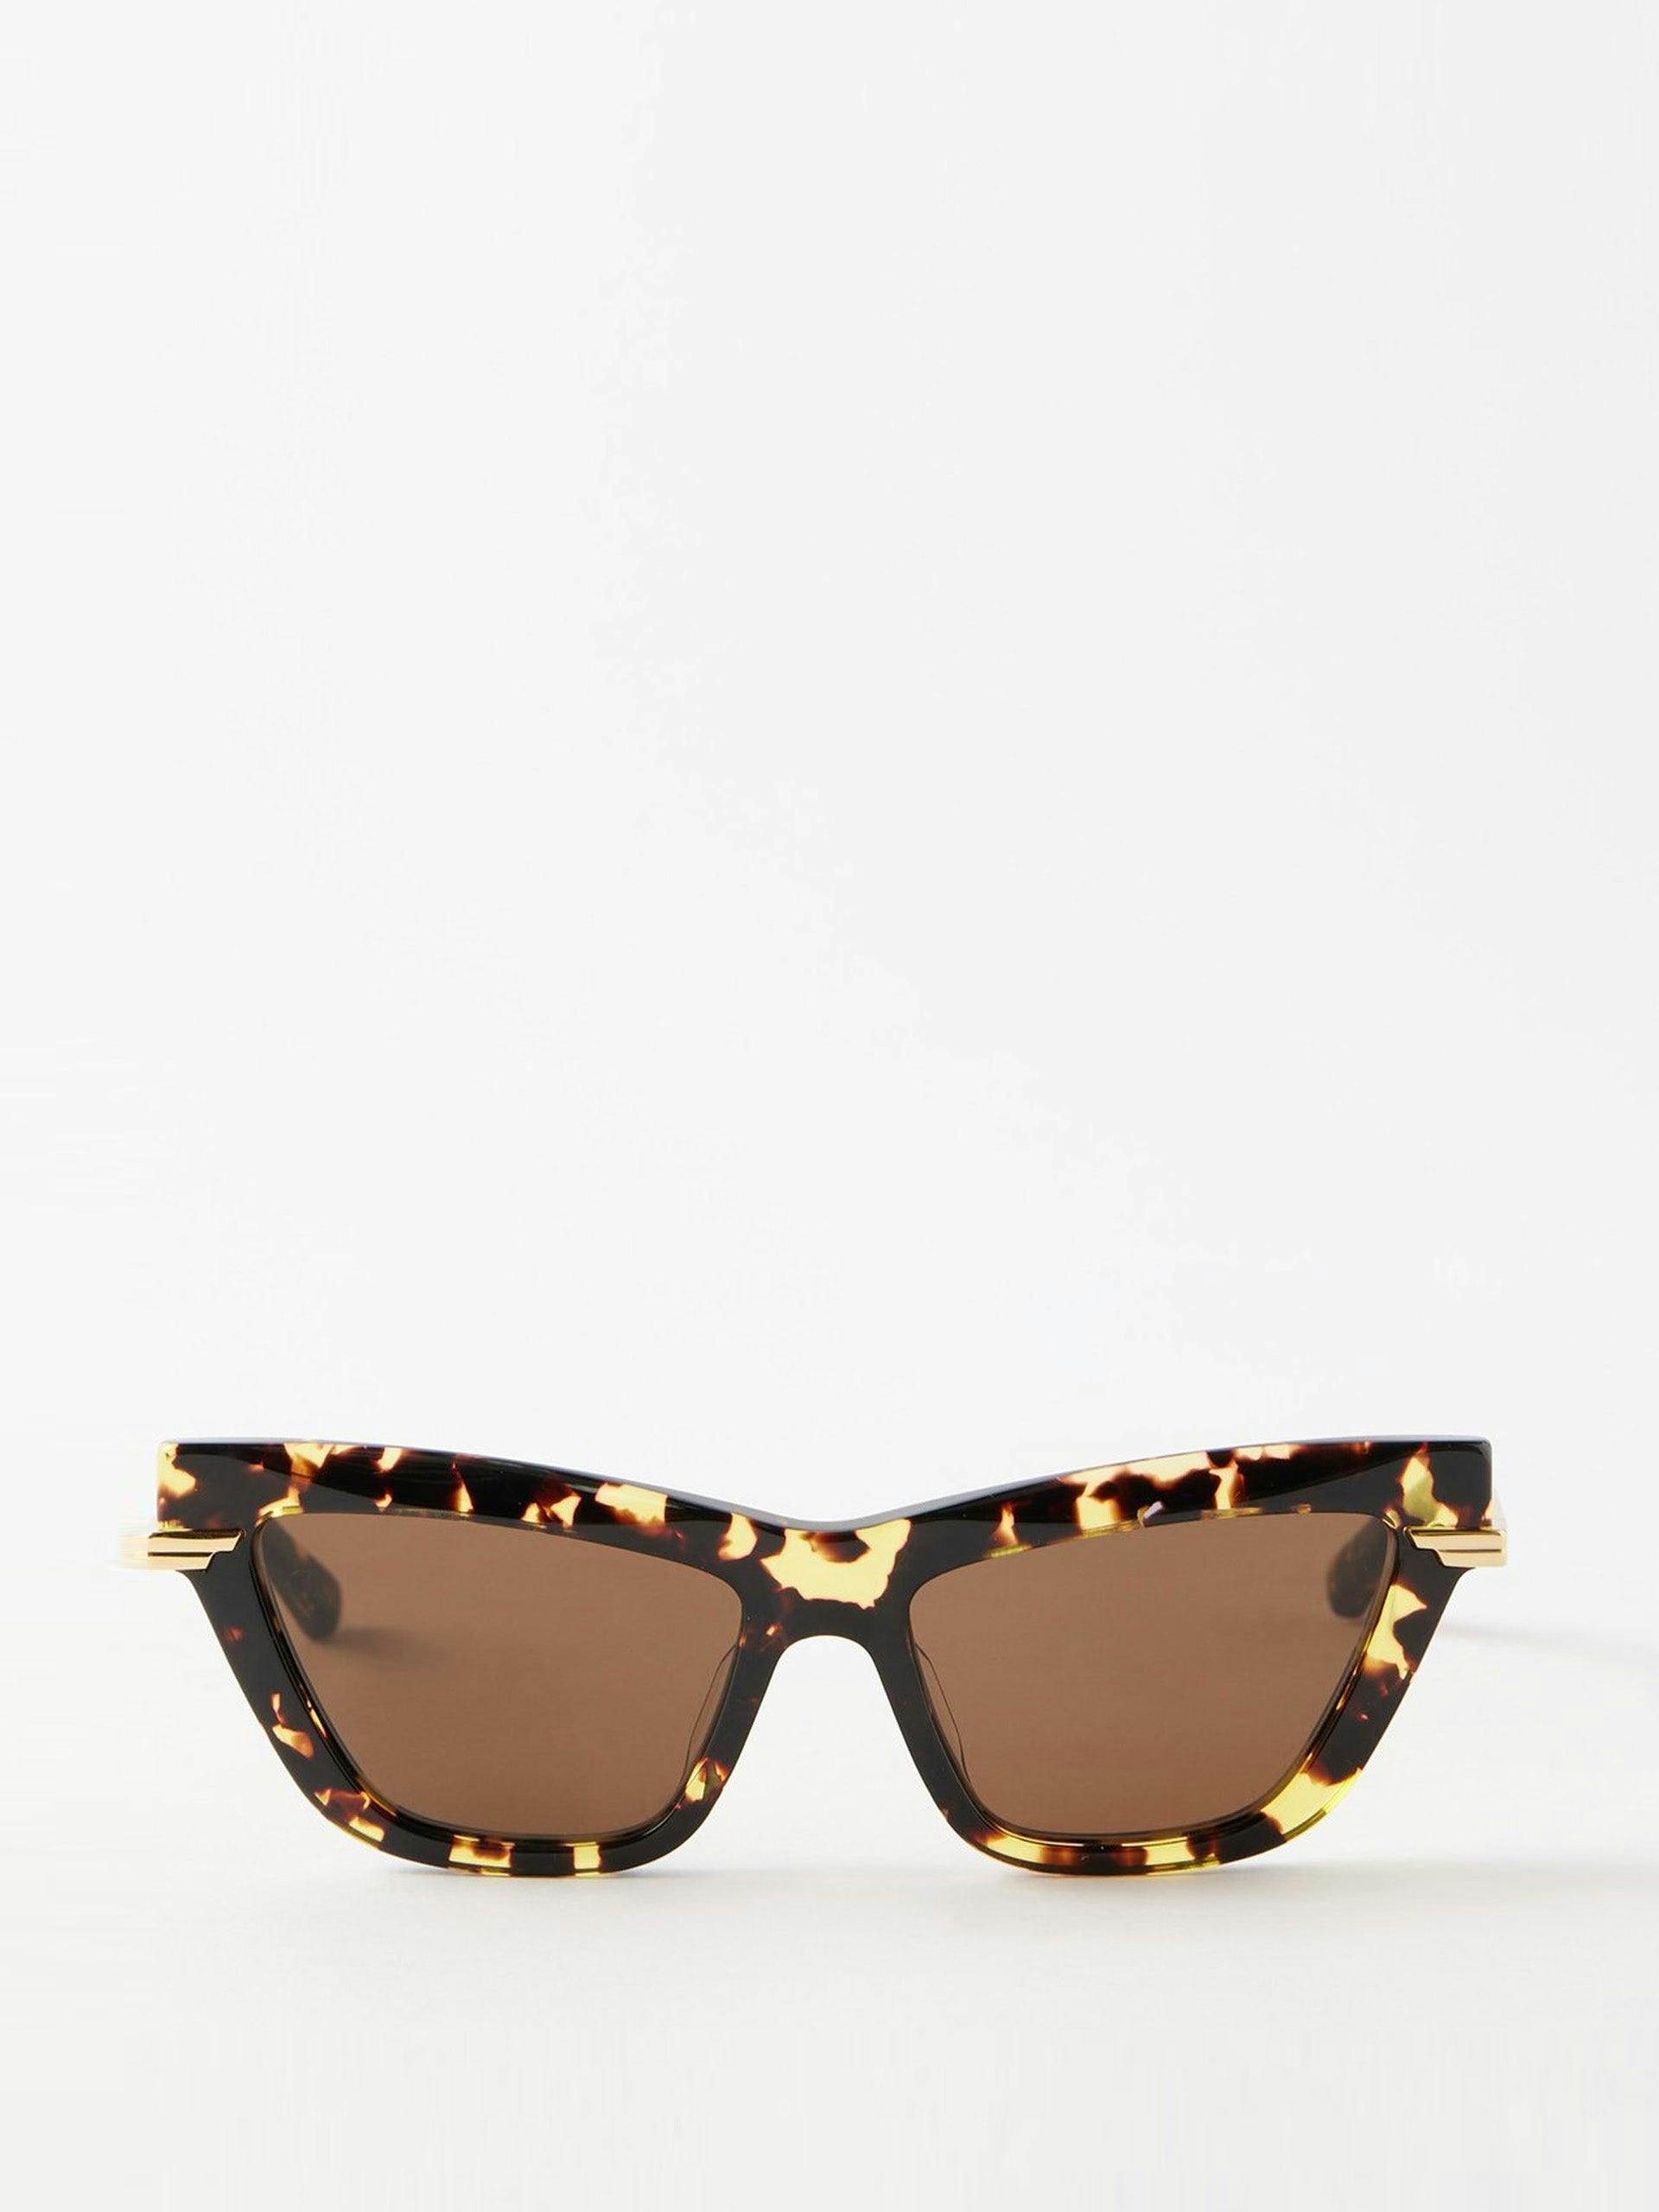 Brown cat-eye tortoiseshell-acetate sunglasses